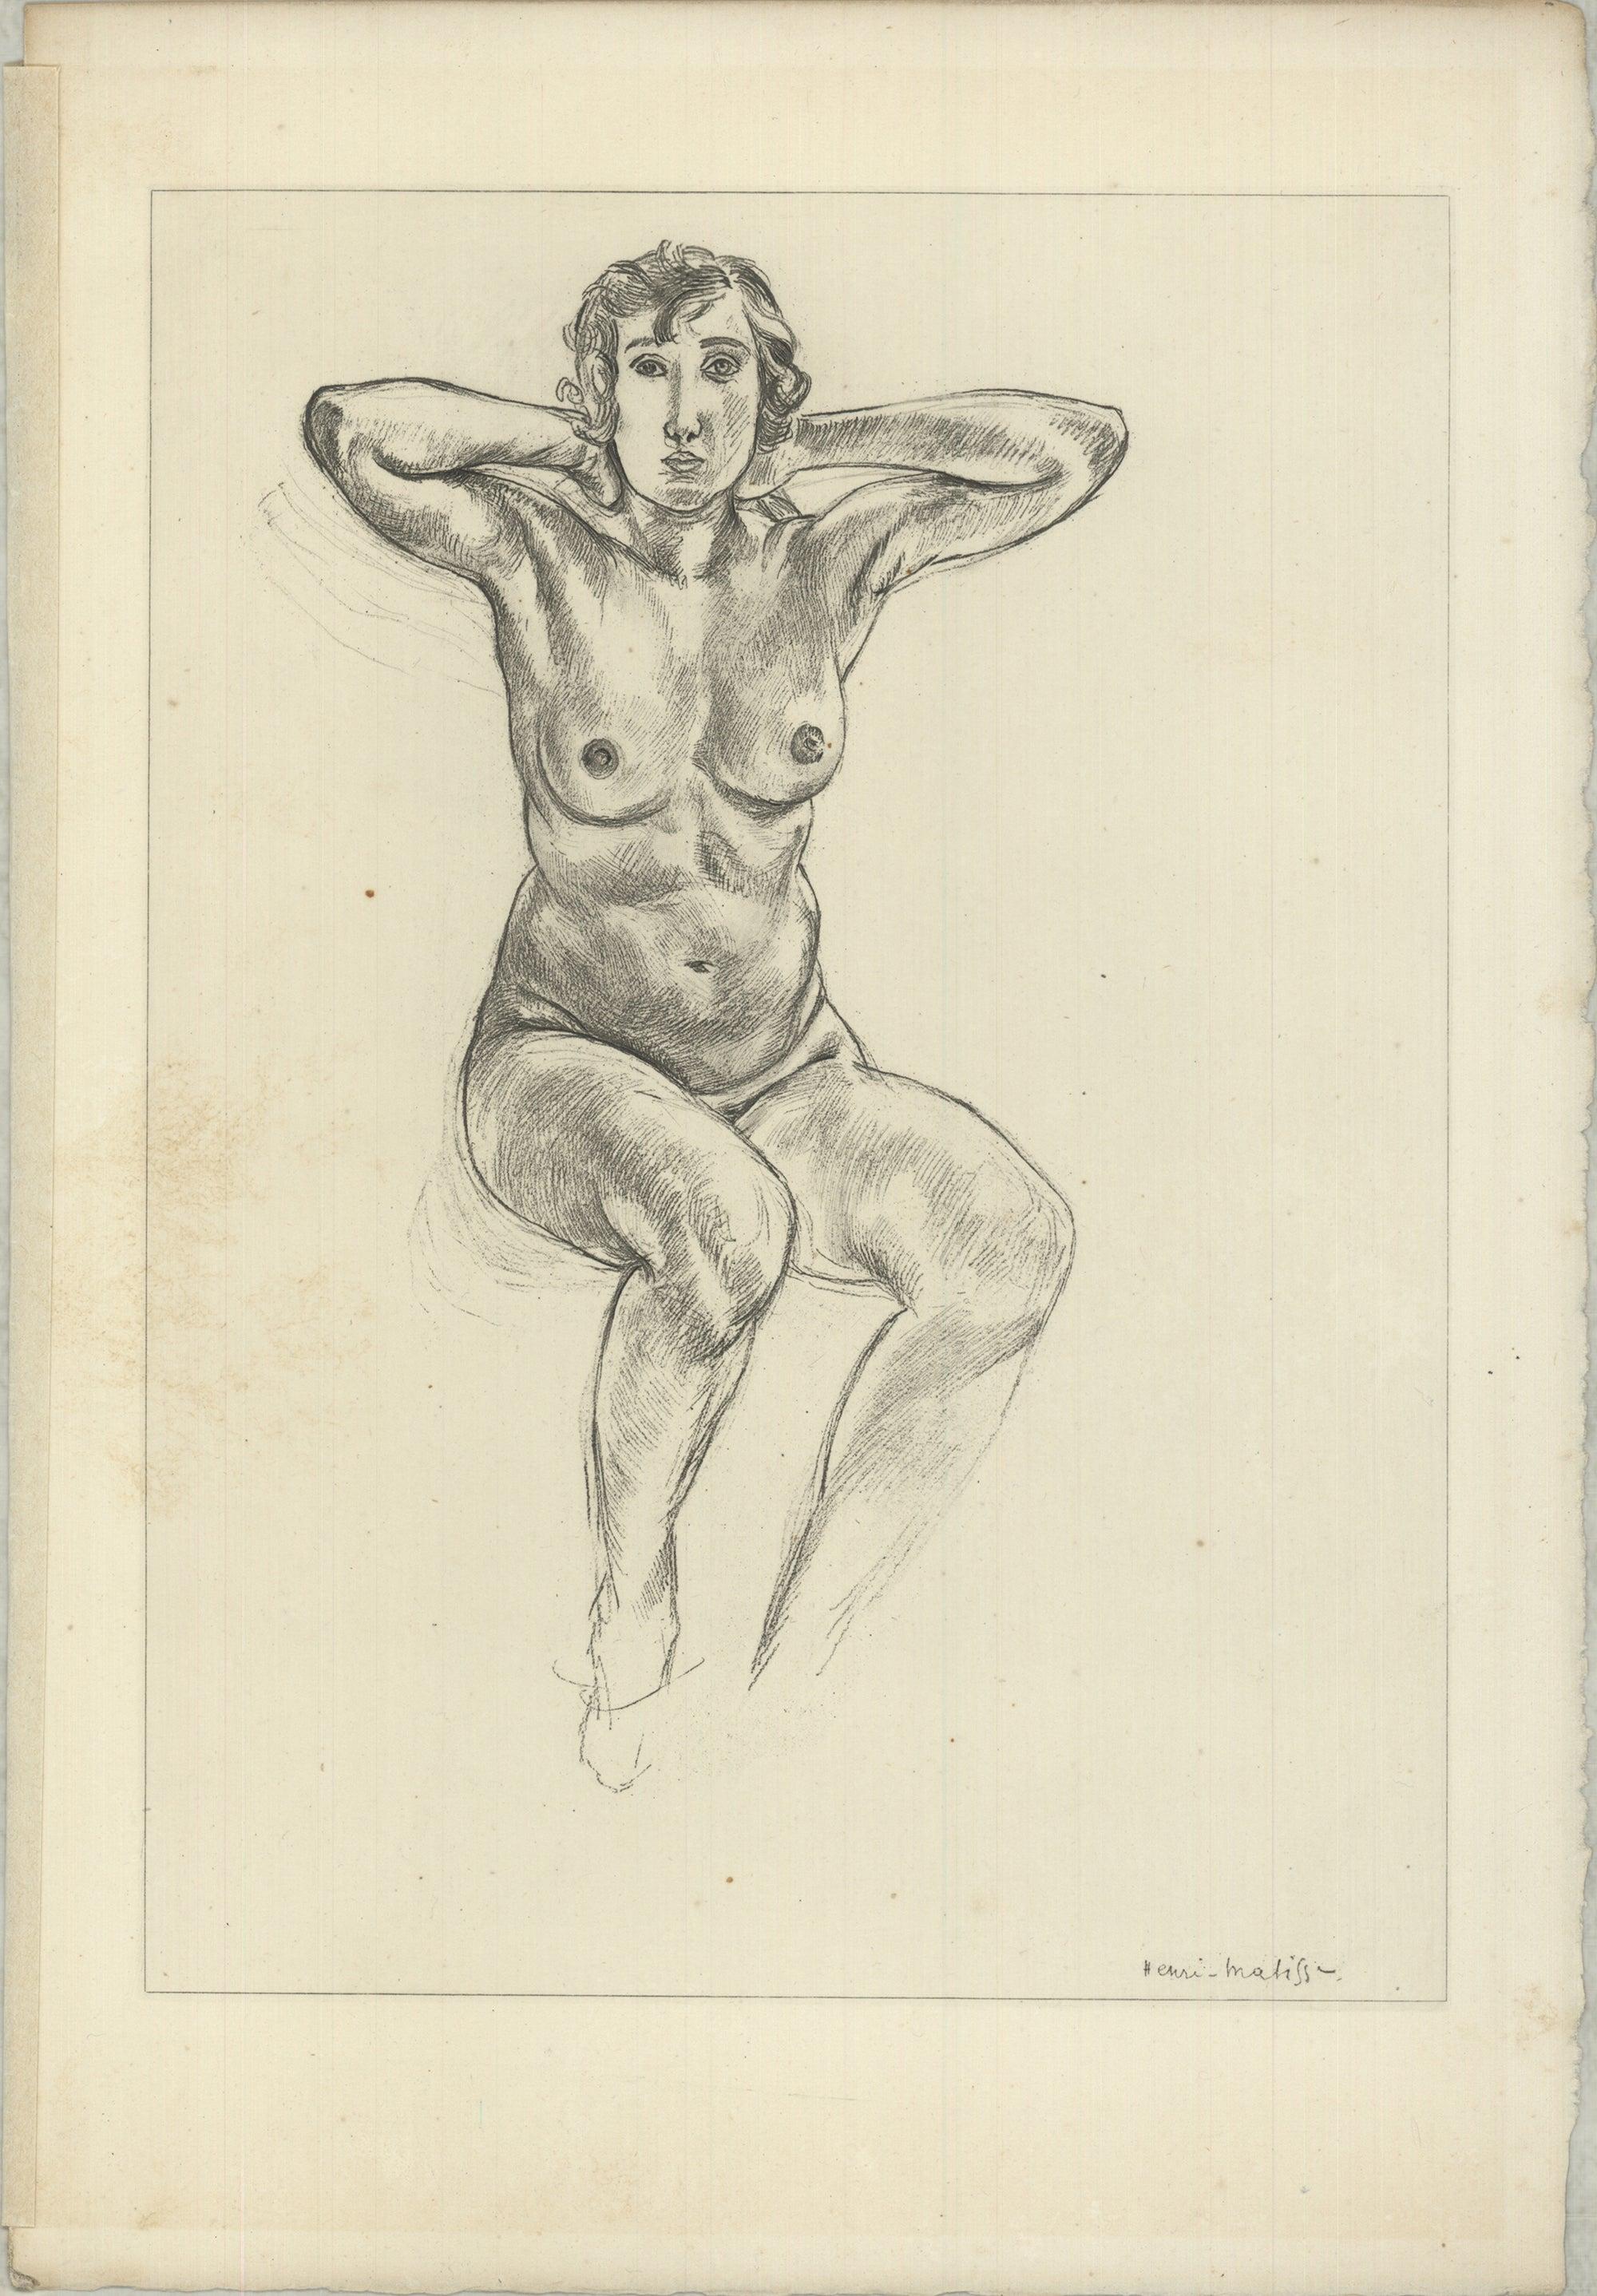 HENRI MATISSE Planche XLII, 1920 FIRST EDITION - Print by Henri Matisse